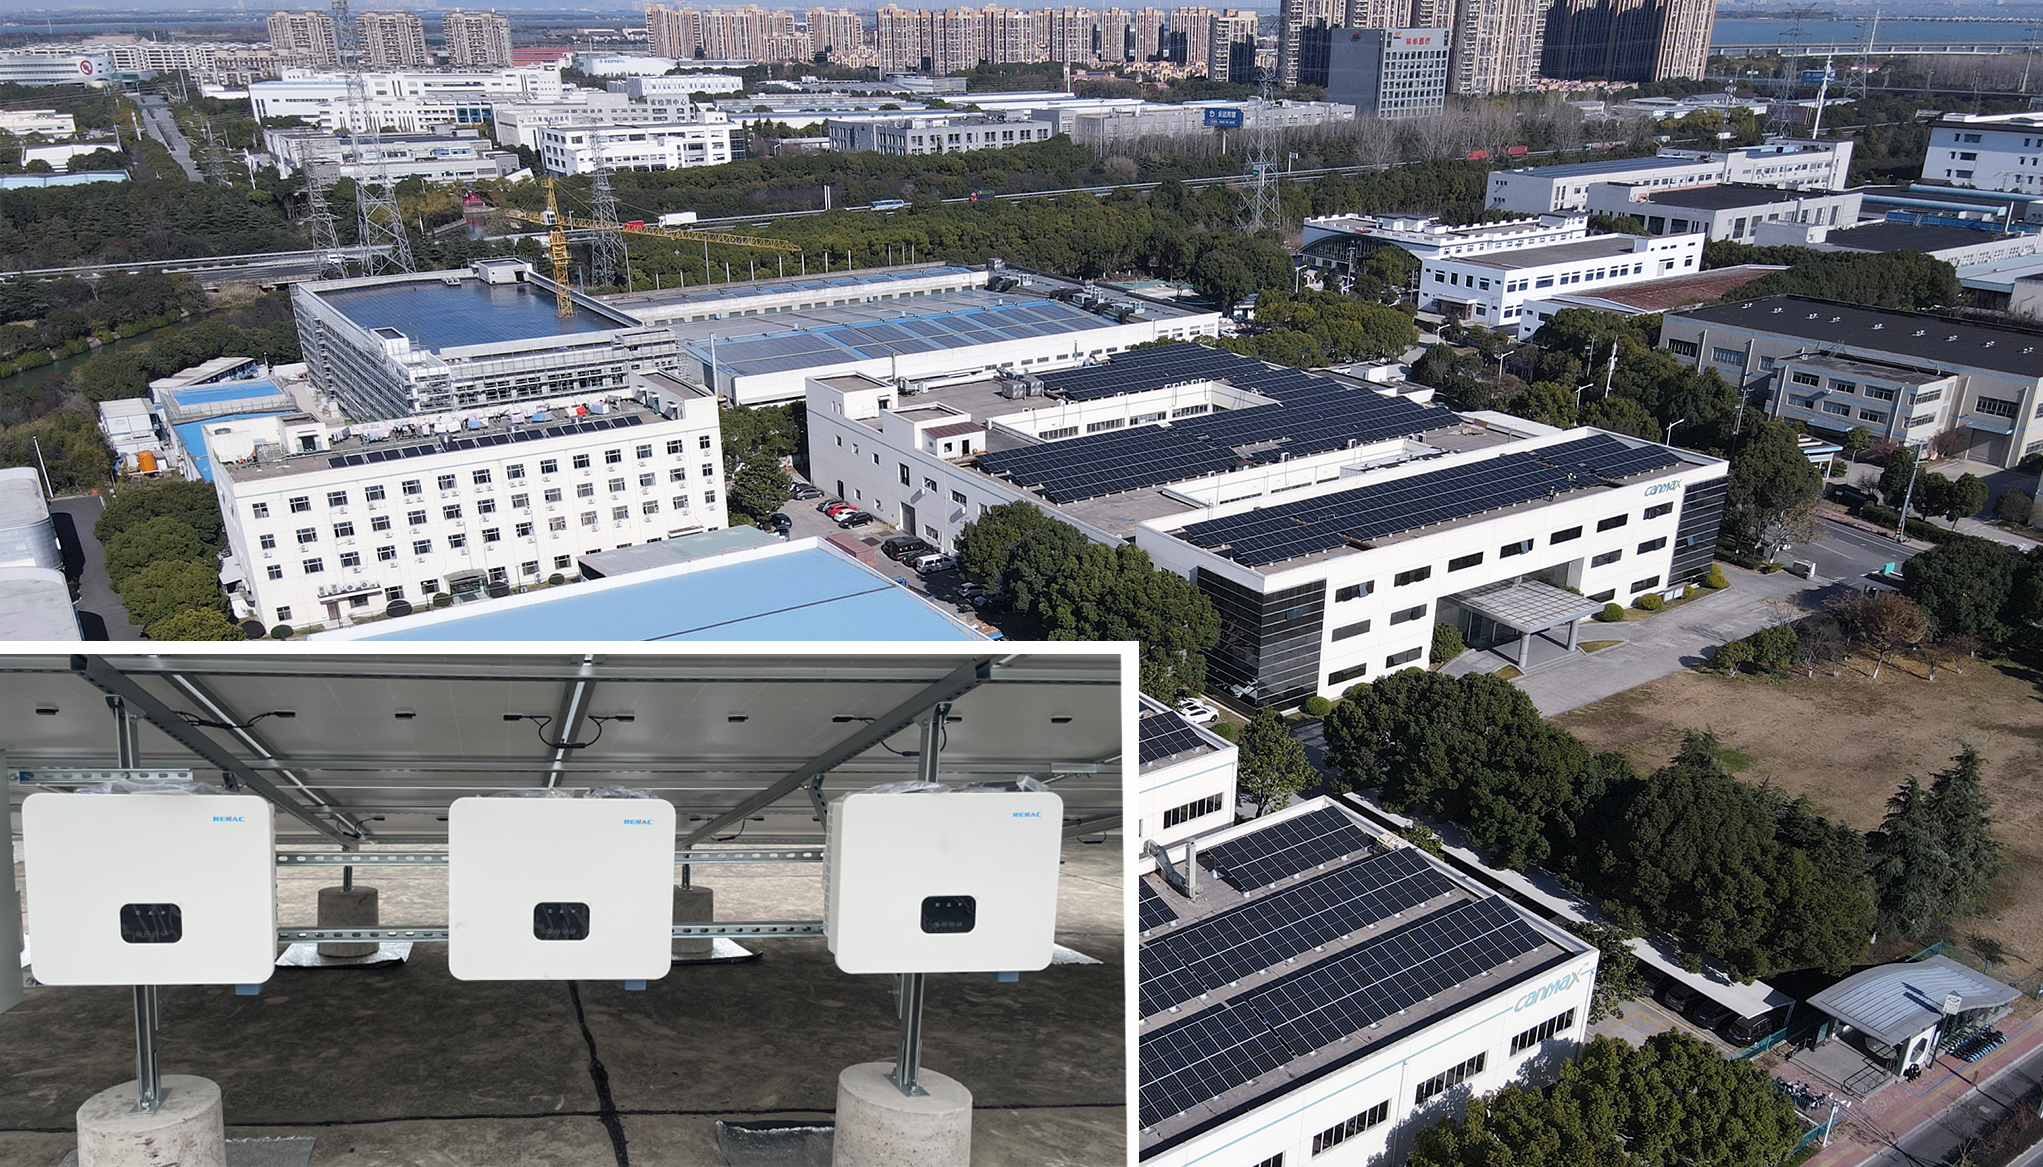 O nouă centrală fotovoltaică comercială în rețea de 1 MW auto-investită RENAC a fost pusă în funcțiune cu succes în Suzhou, China!